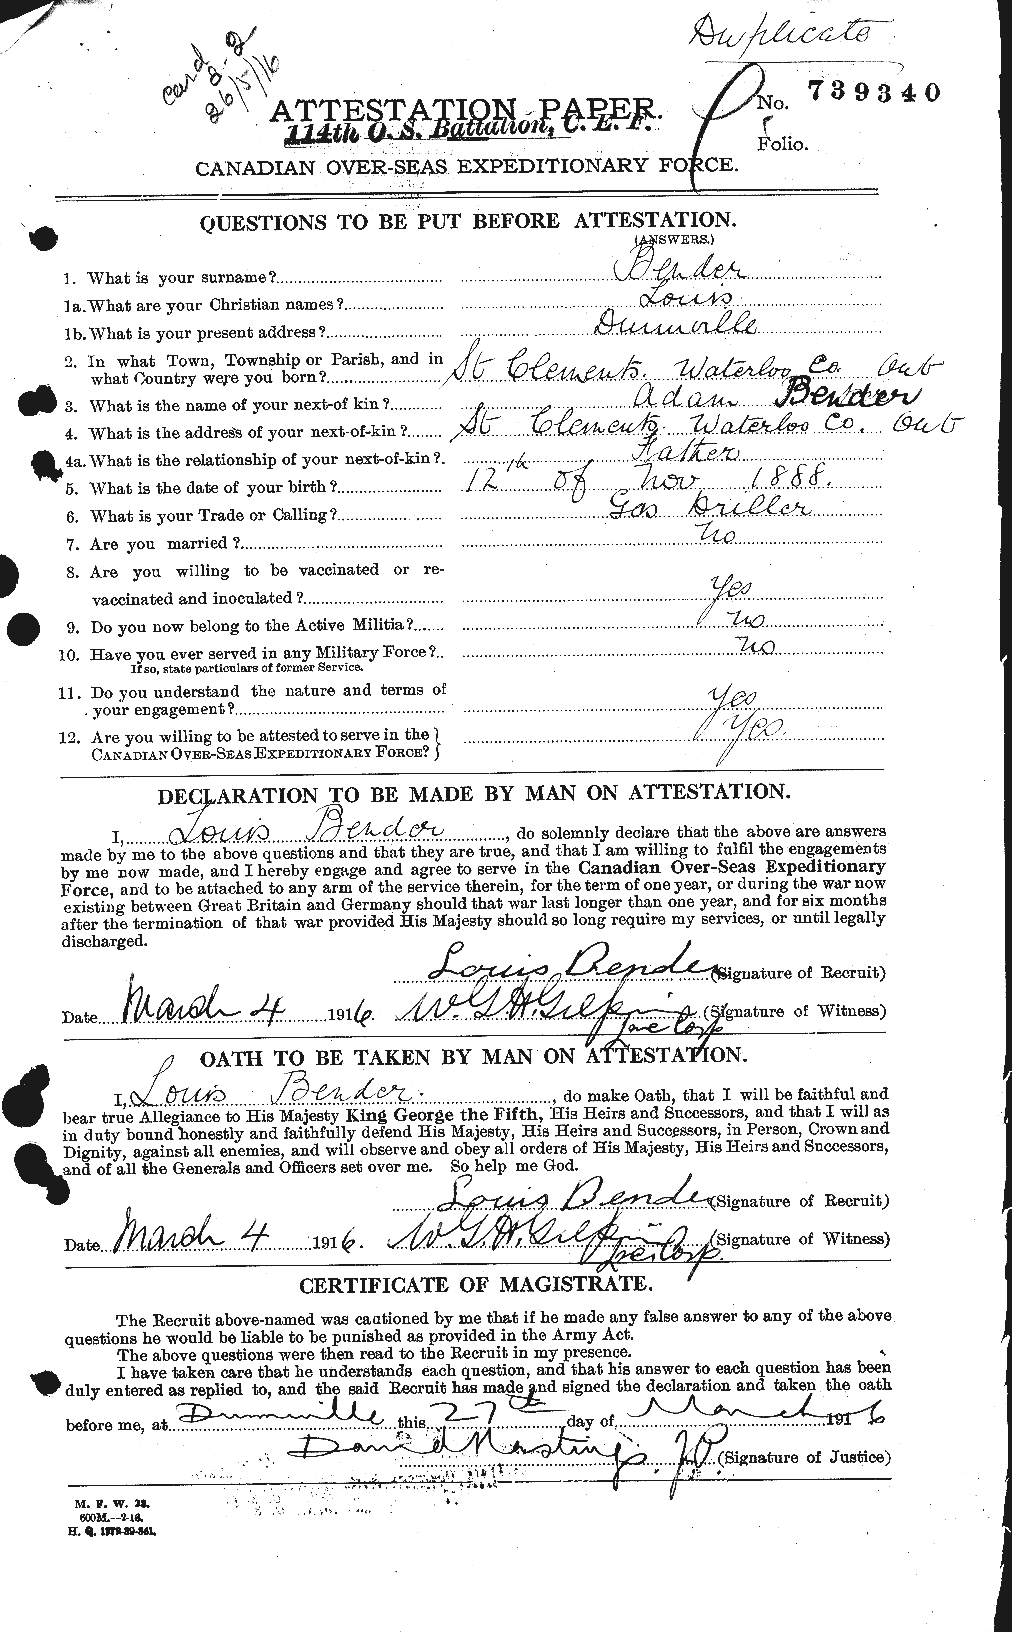 Dossiers du Personnel de la Première Guerre mondiale - CEC 235701a